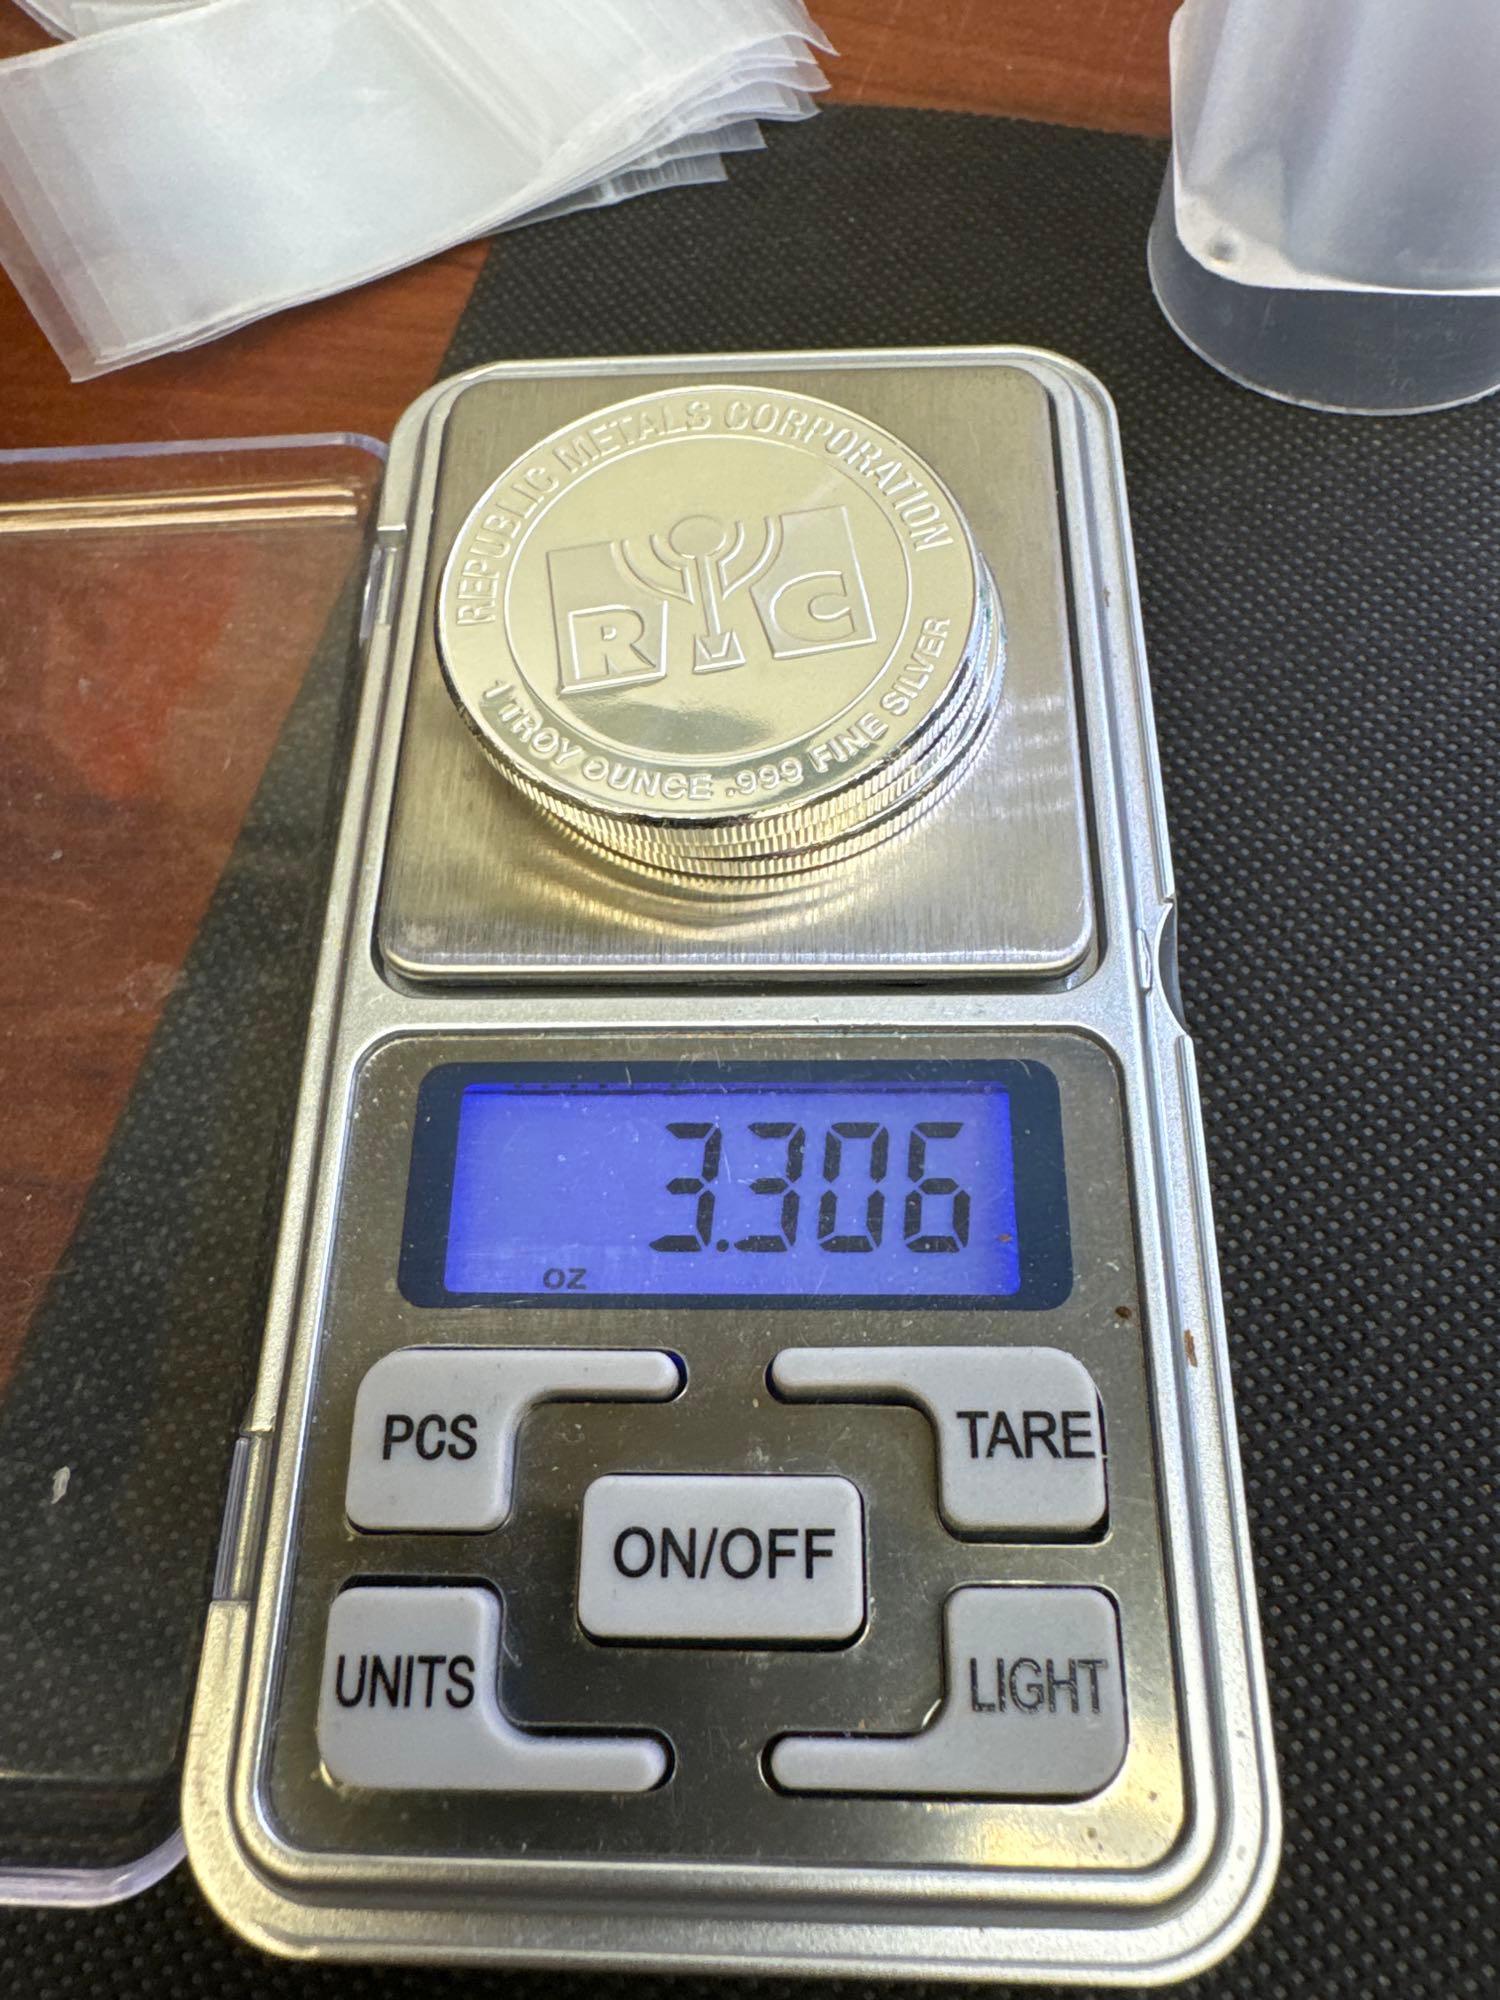 3x RMC 1 Troy Ounce .999 Fine Silver Bullion Coins 3.30 Oz